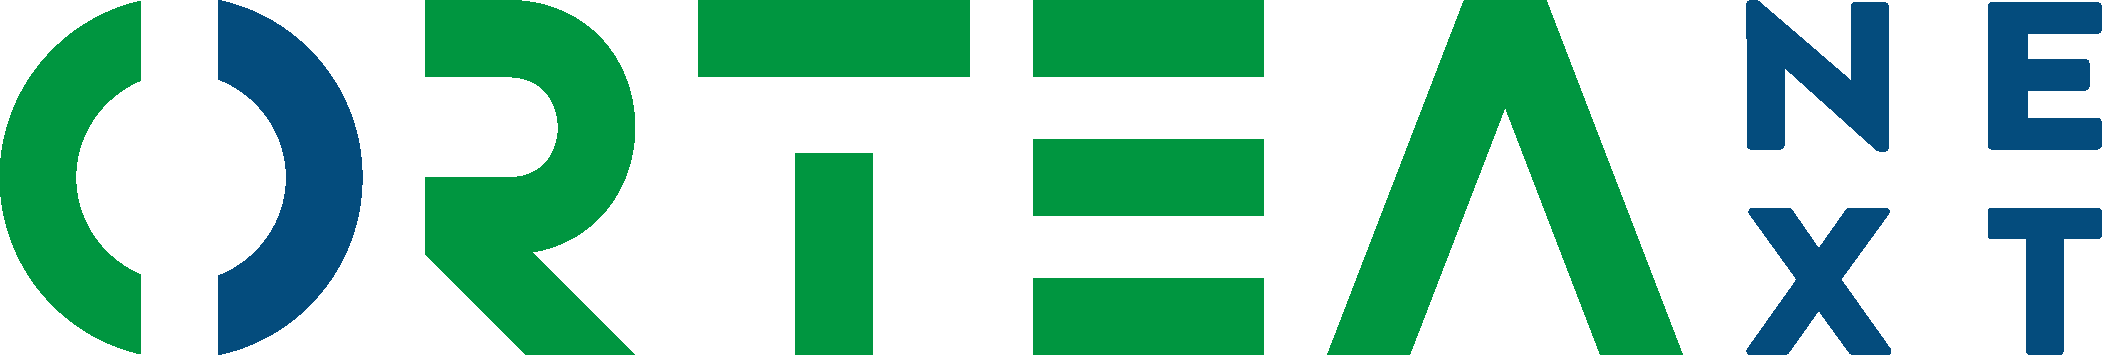 Logo ORTEA SpA